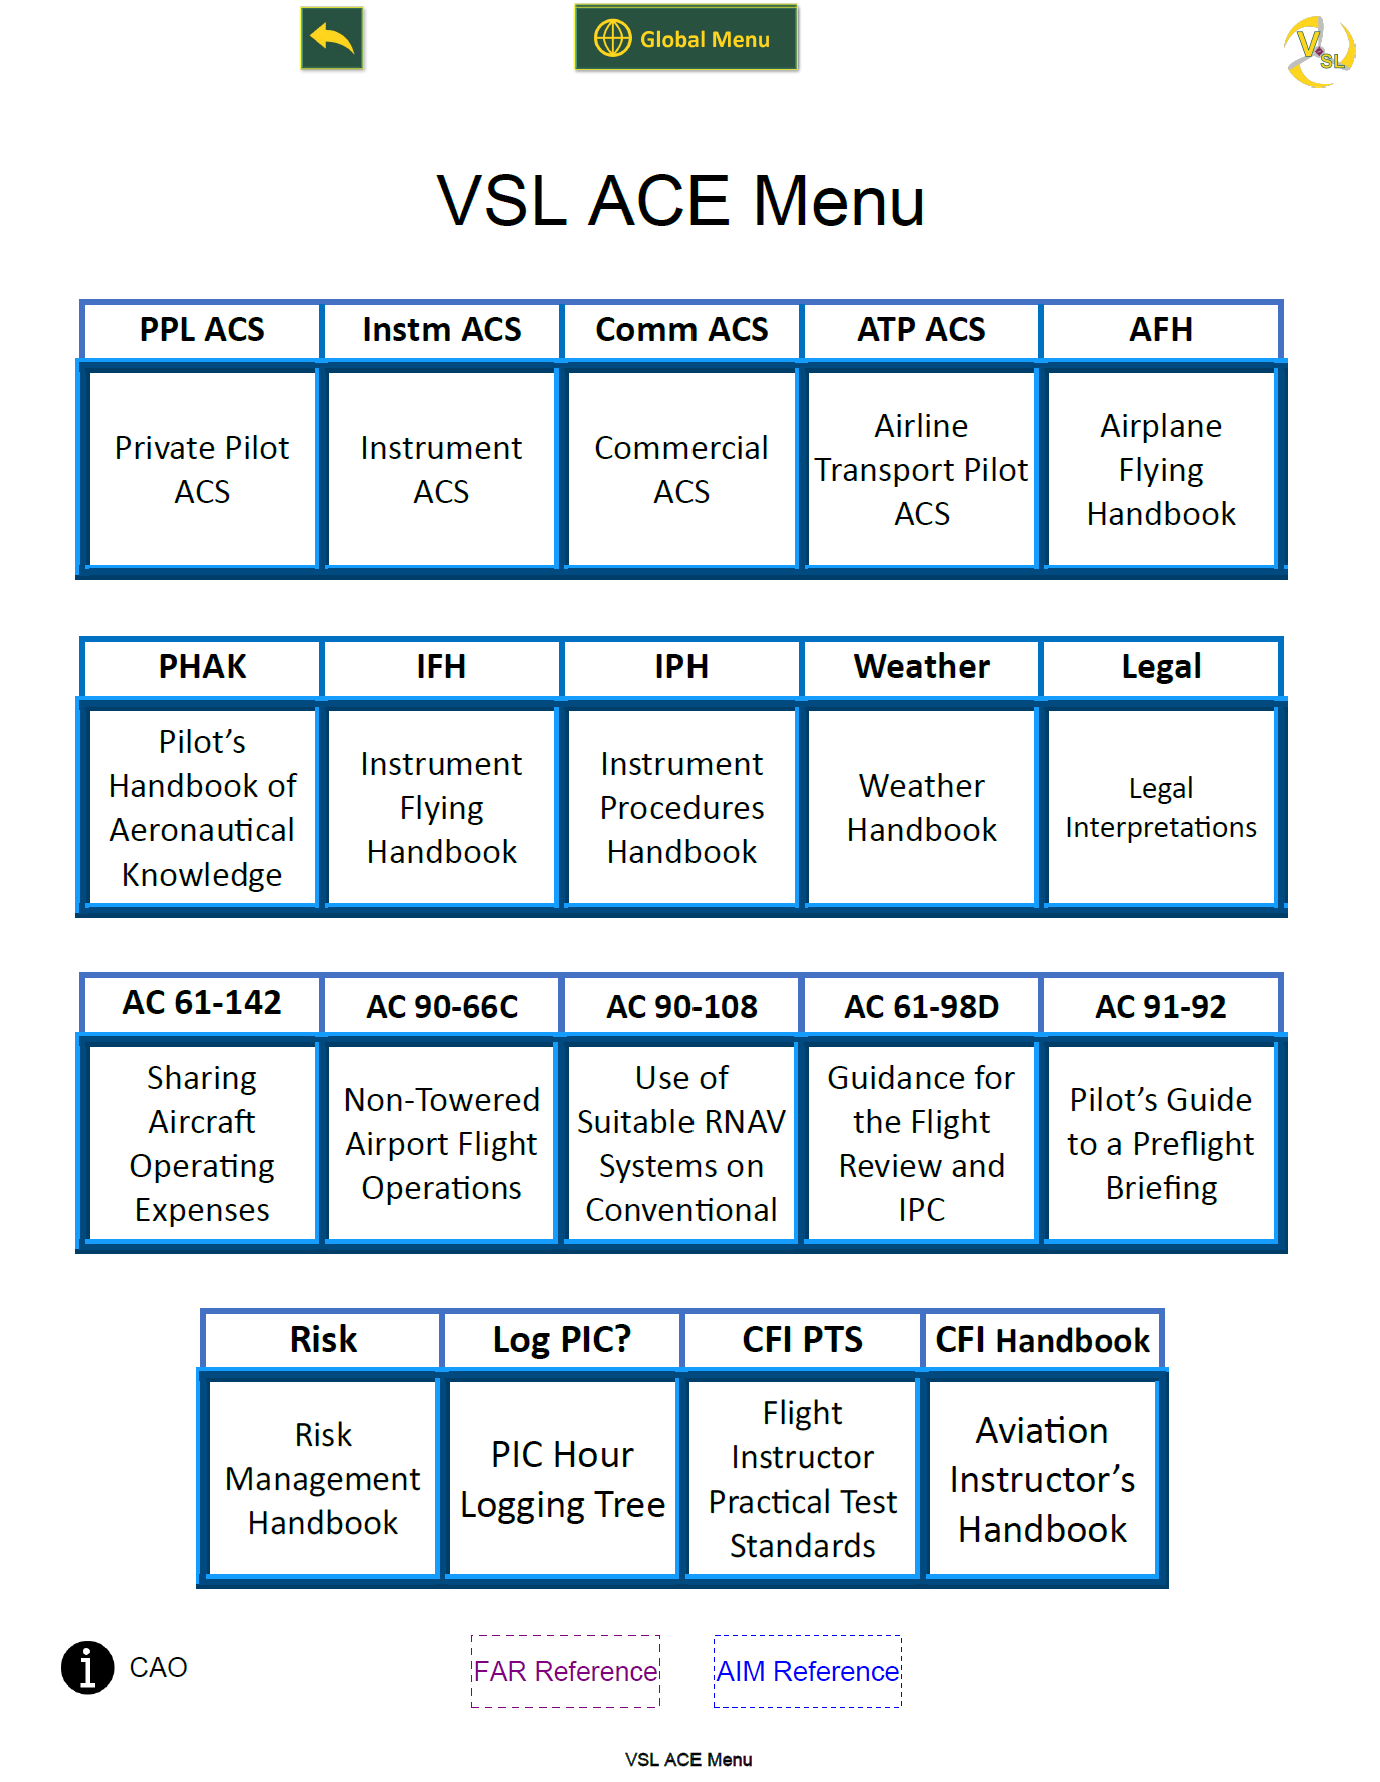 VSL ACE Guide